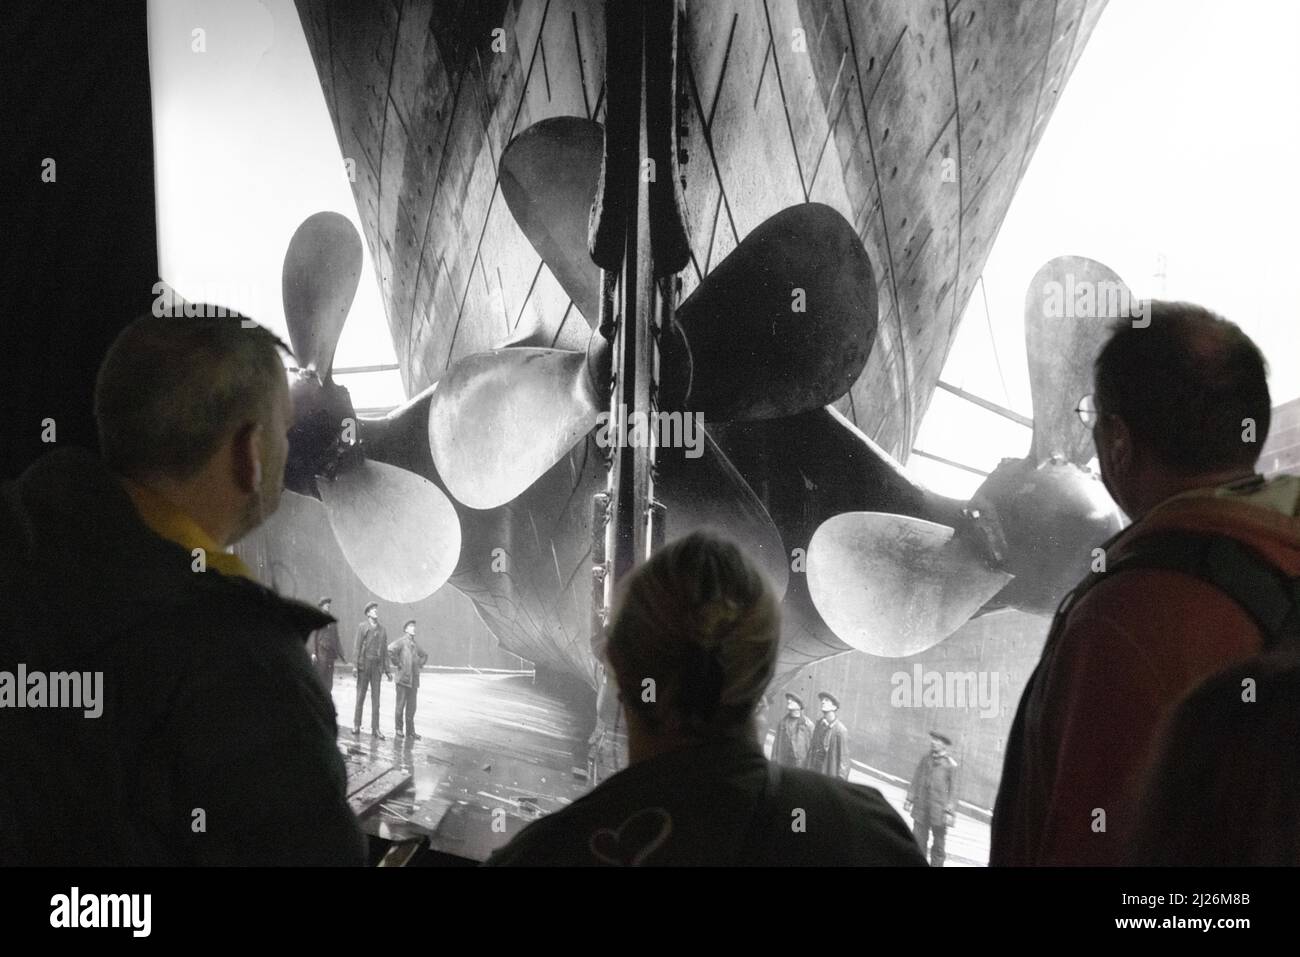 The Titanic Exhibition - visiteurs regardant une photographie des hélices du Titanic, Londres UK Banque D'Images